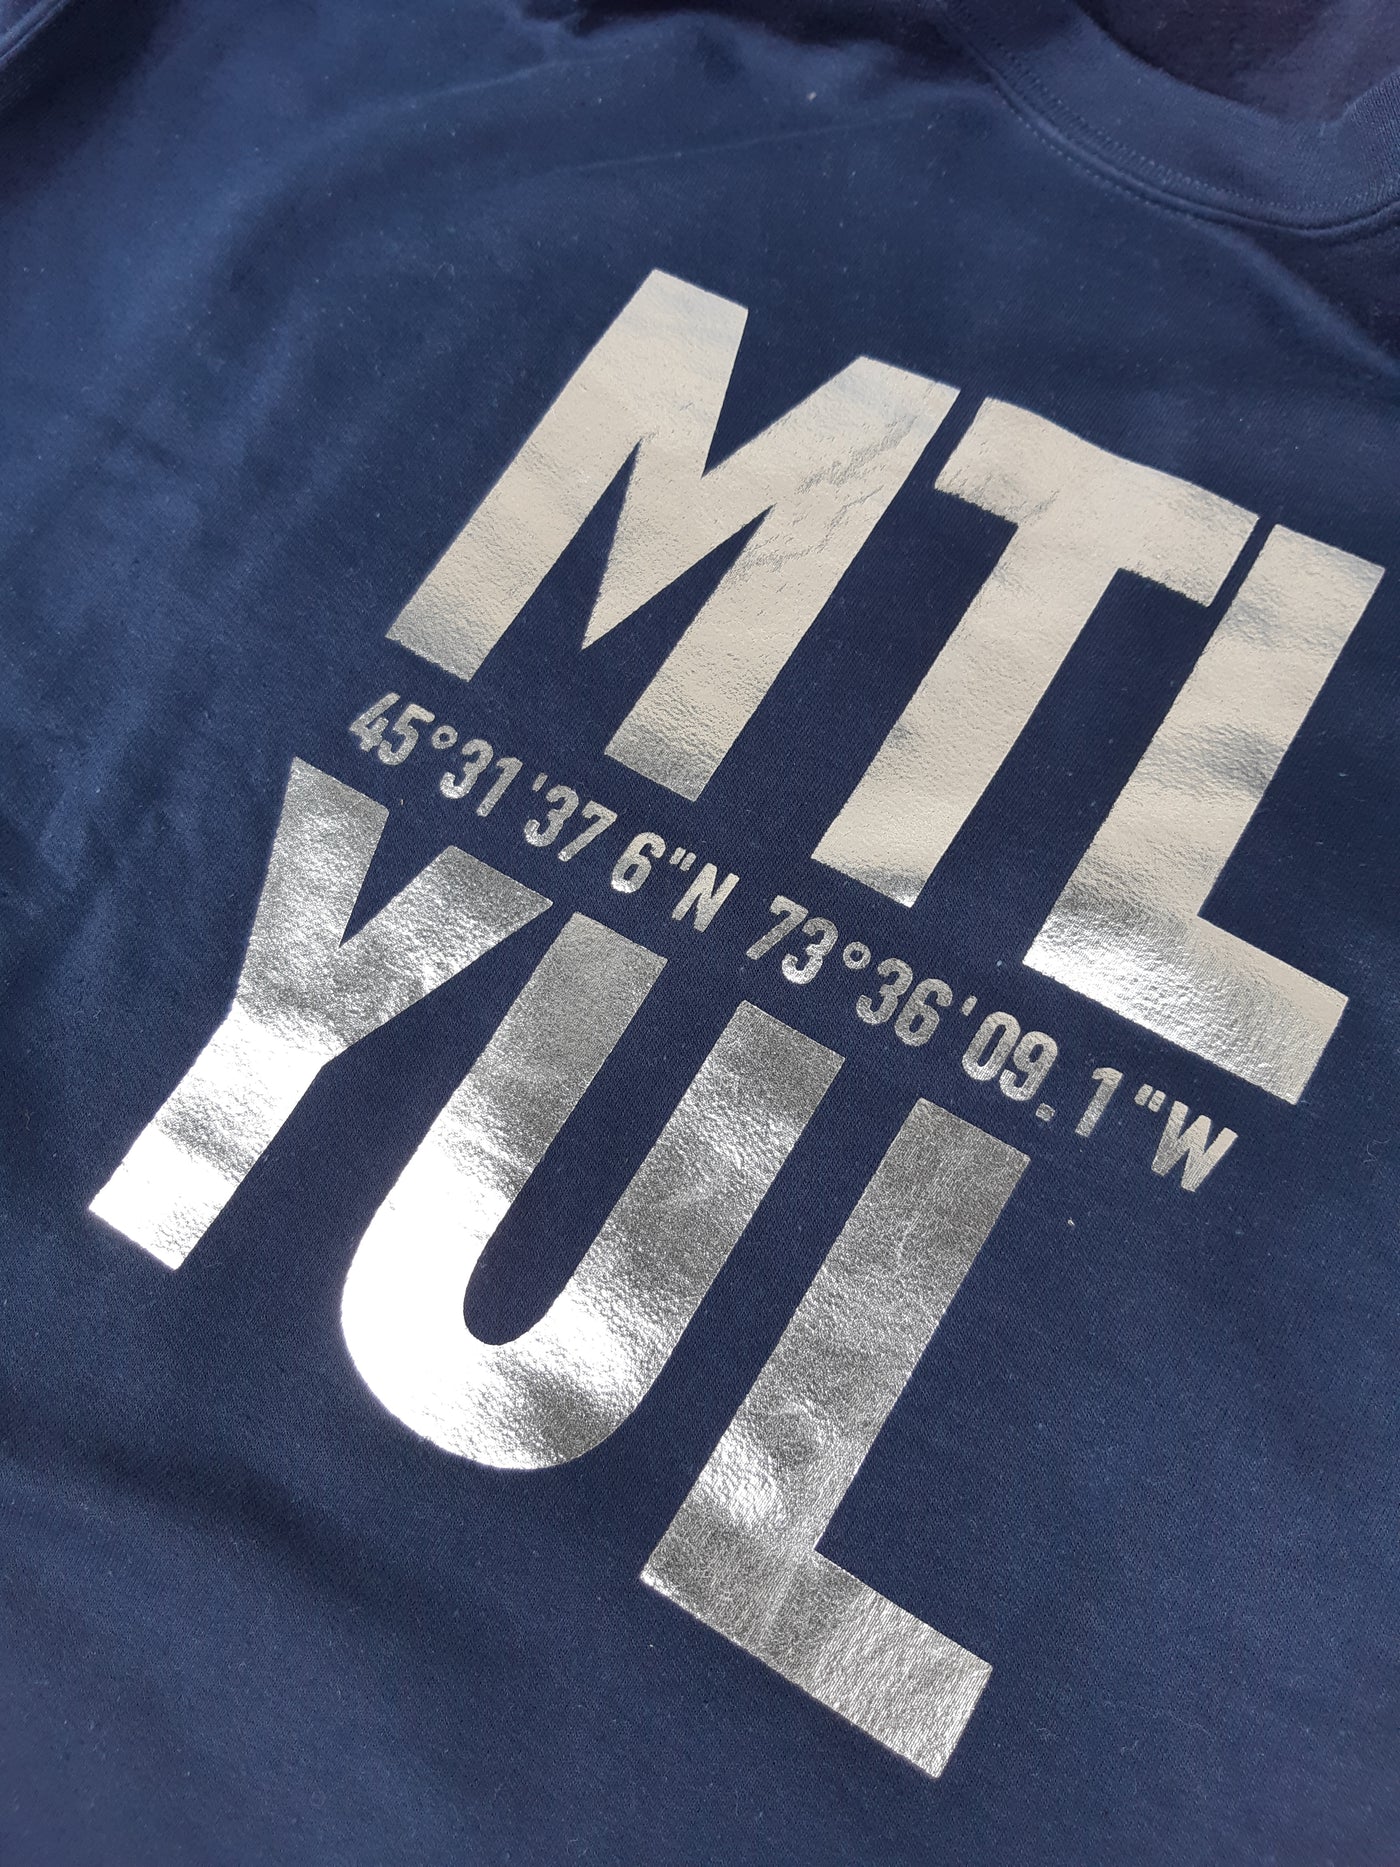 T-shirt Imprimé - MTL/YUL x C'est beau